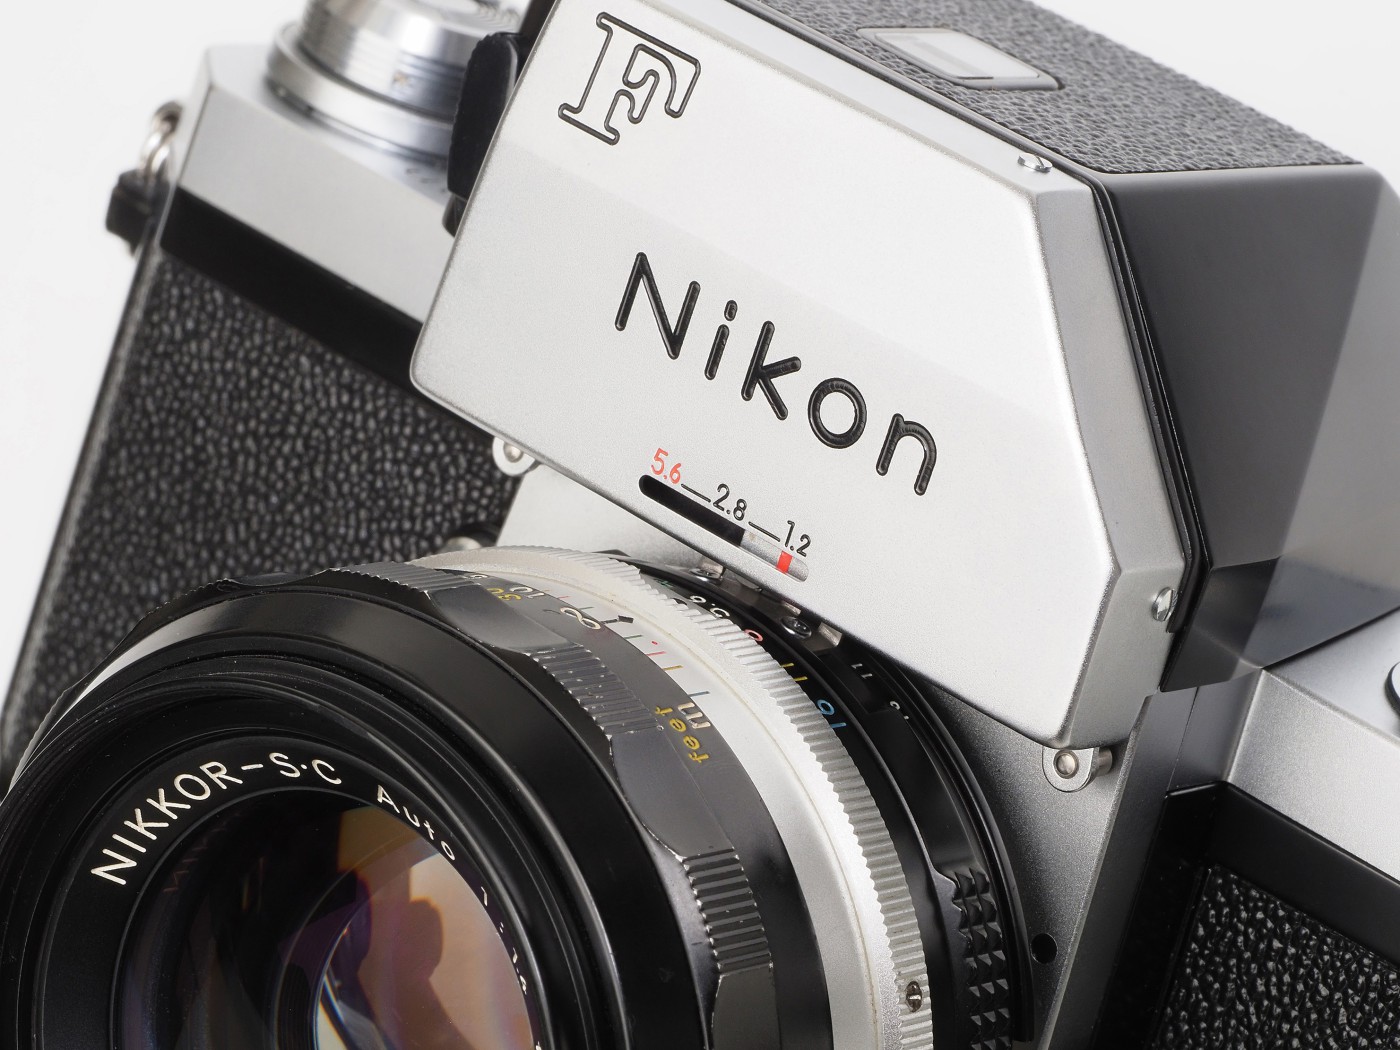 Nikon F 白フォトミック FTN ブラックファインダーファインダー内のチリ混入あり